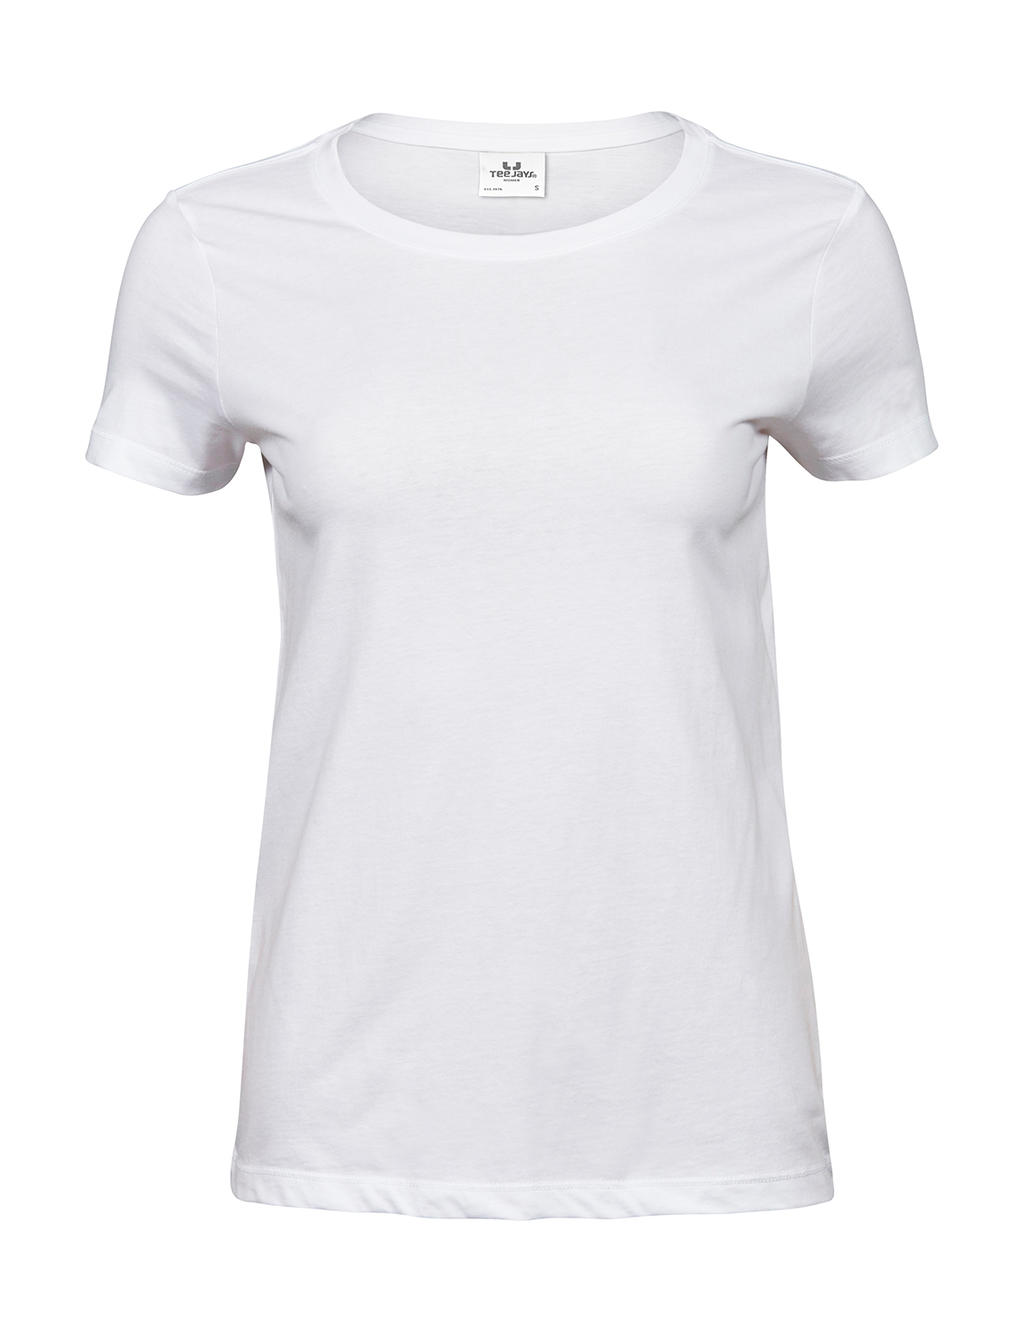 Tee jays - camiseta luxury mujer - 5001